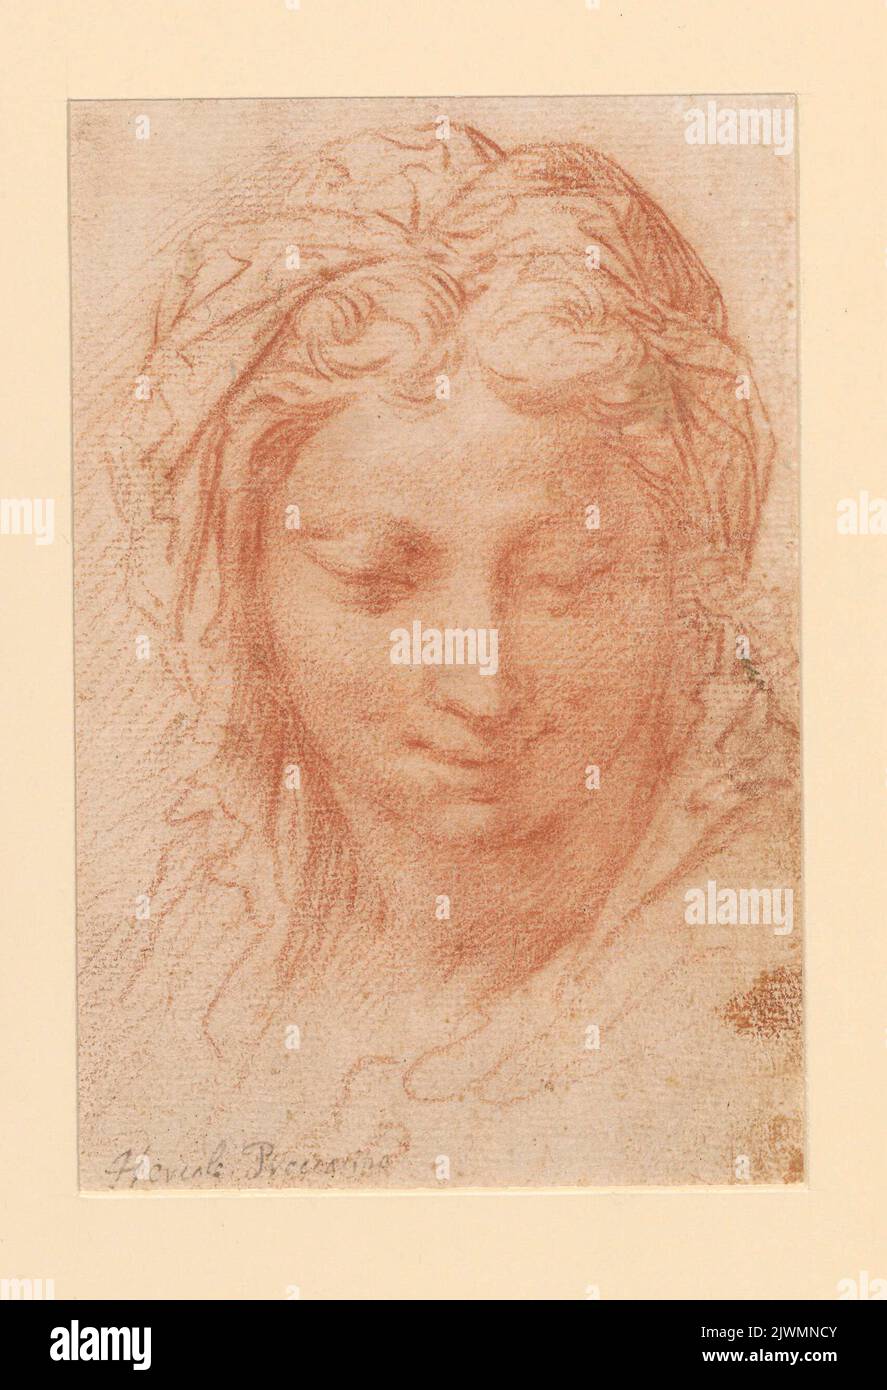 Tête d'une femme aux yeux d'amande. Procacini, Giulio Cesare (1574-1625), dessinateur, dessinateur, Proccacini, Ercole II (1596-ca 1676), dessinateur, dessinateur Banque D'Images